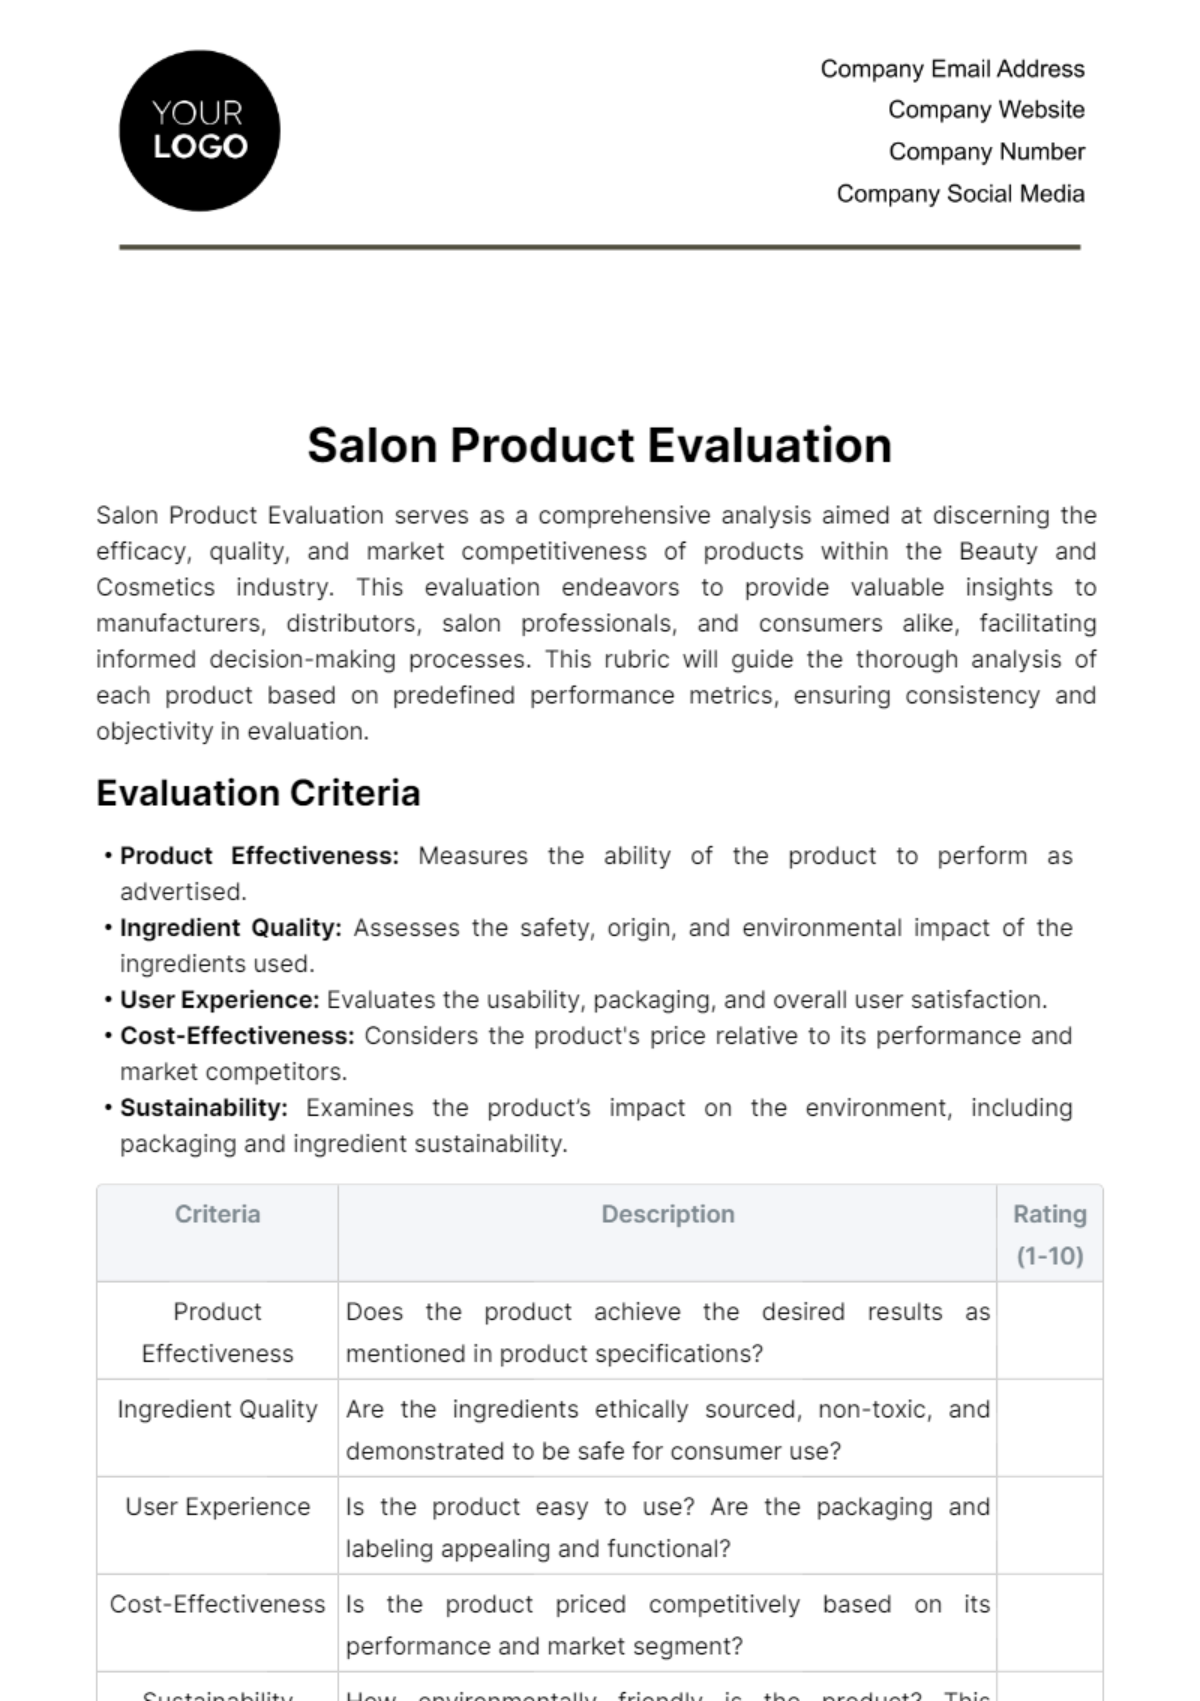 Salon Product Evaluation Template